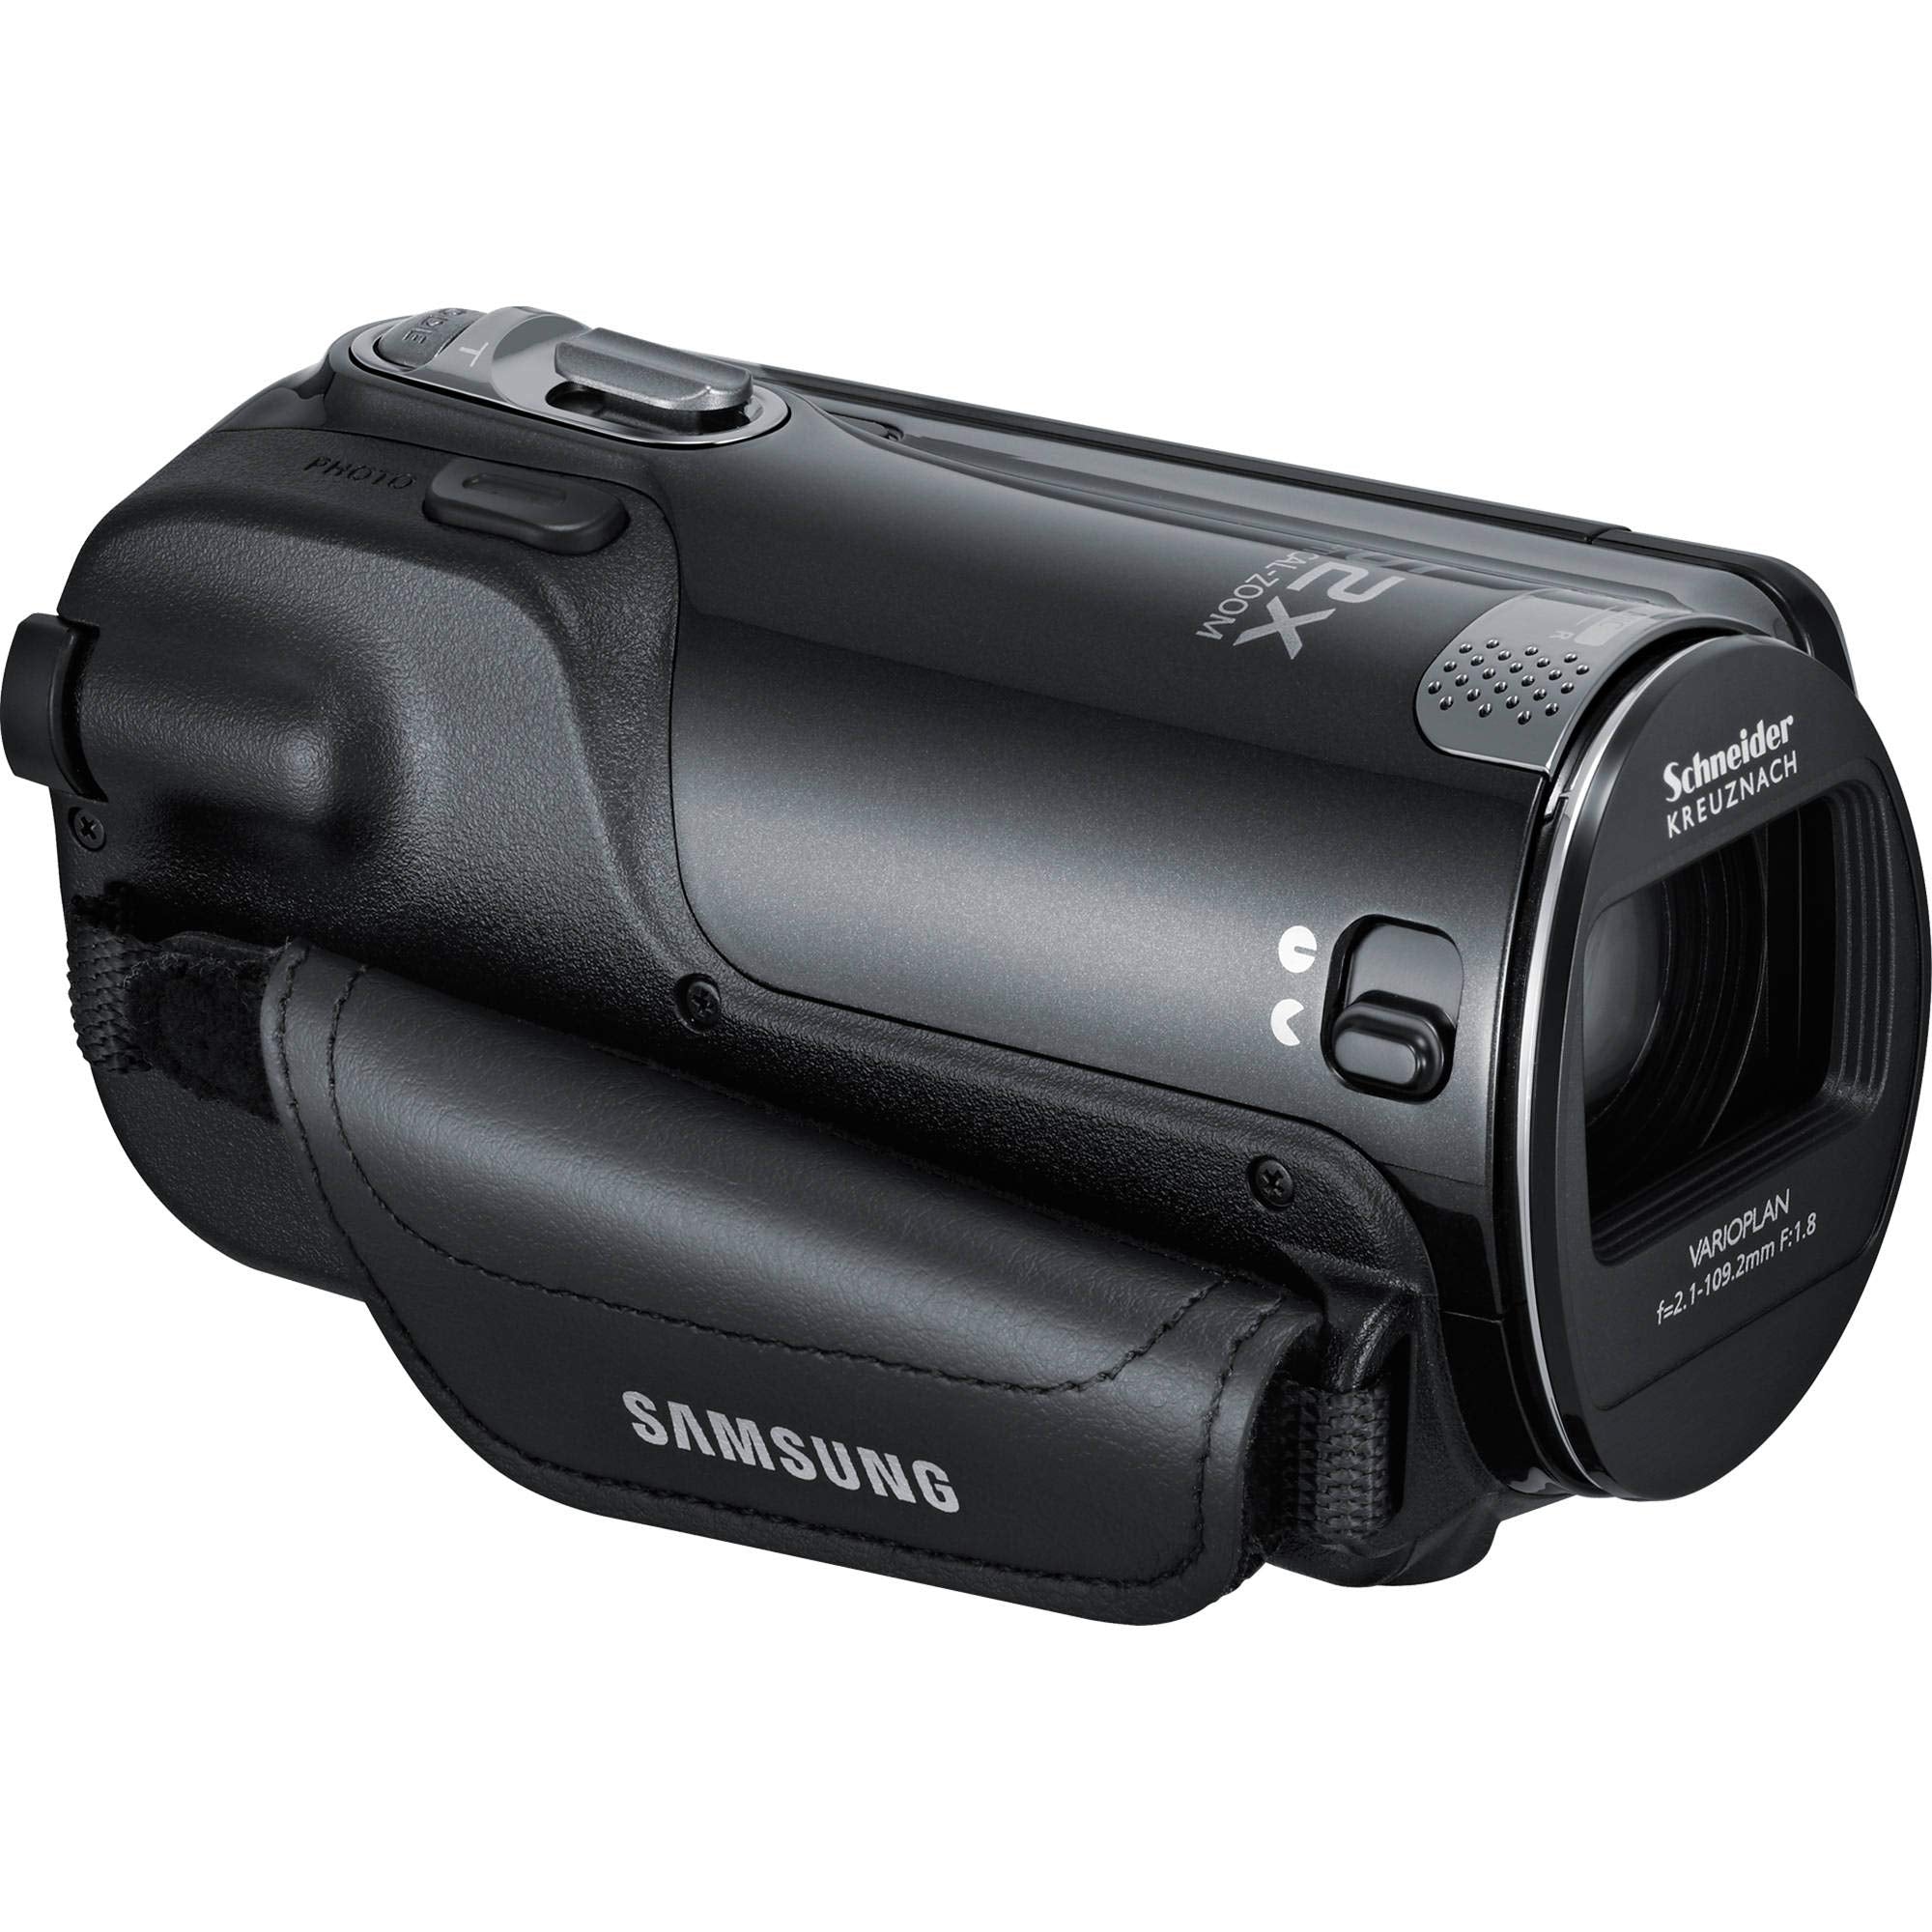 Samsung HMX-F90 Black Camcorder + Hands-Free Shoulder Mount Stabilizer + Stabilizing Handle/Video Grip + Full-Size Aluminum Tripod Supreme Bundle